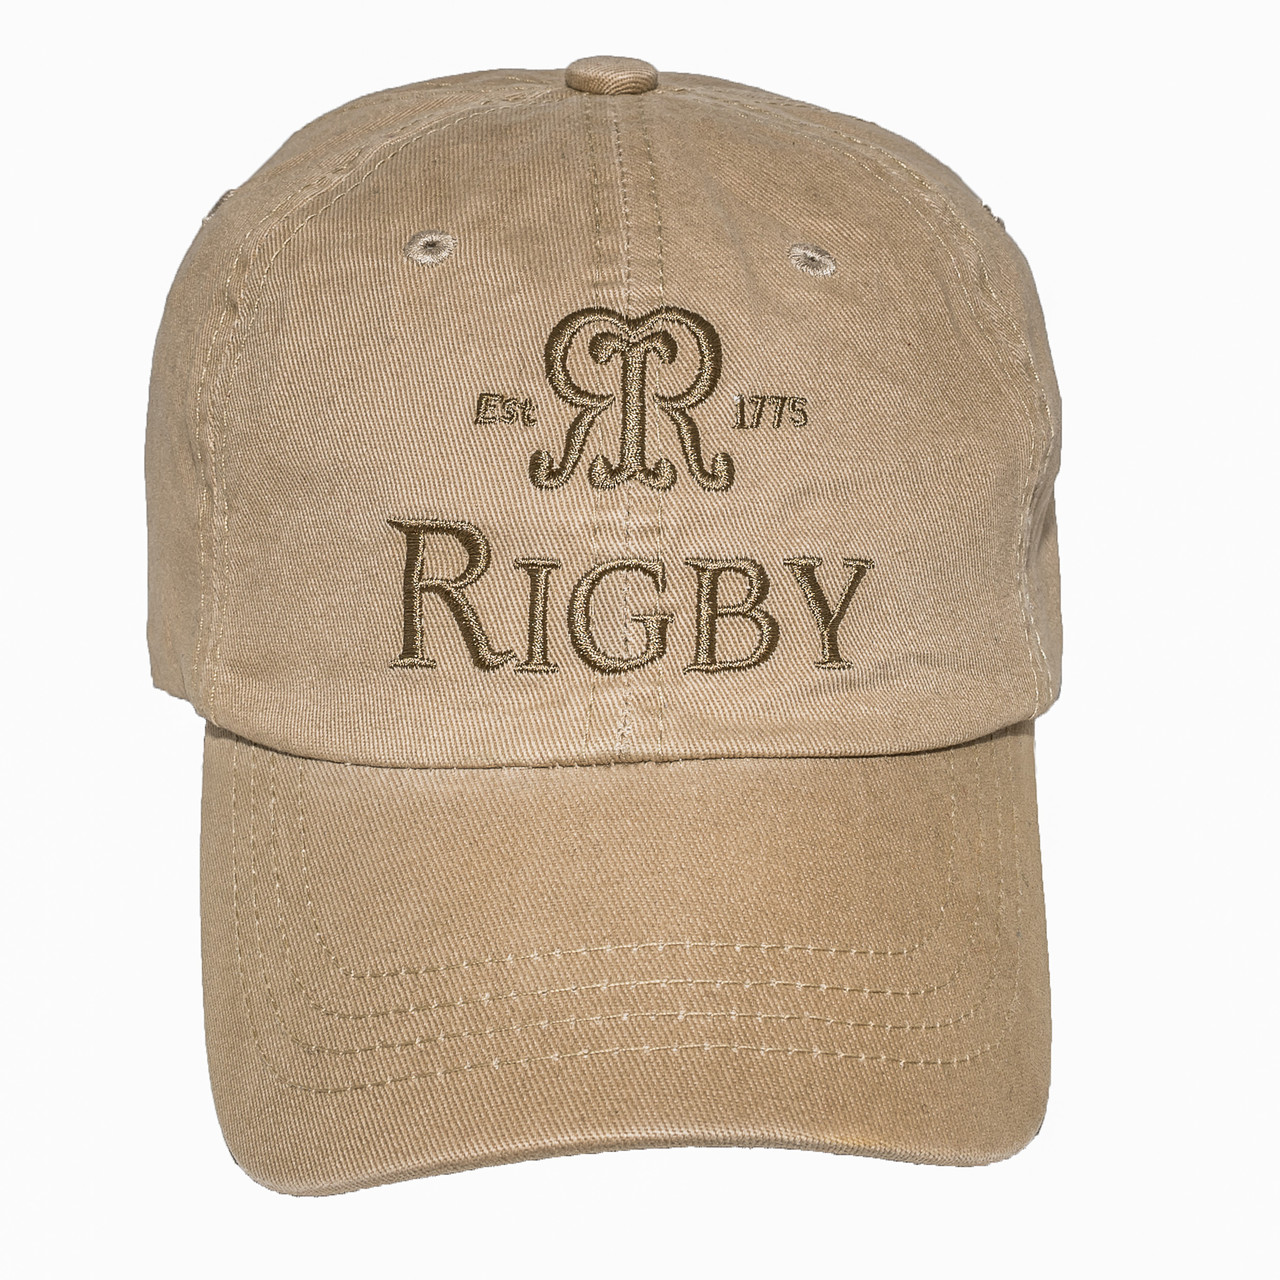 Rigby YETI Cool Bag - John Rigby & Co.